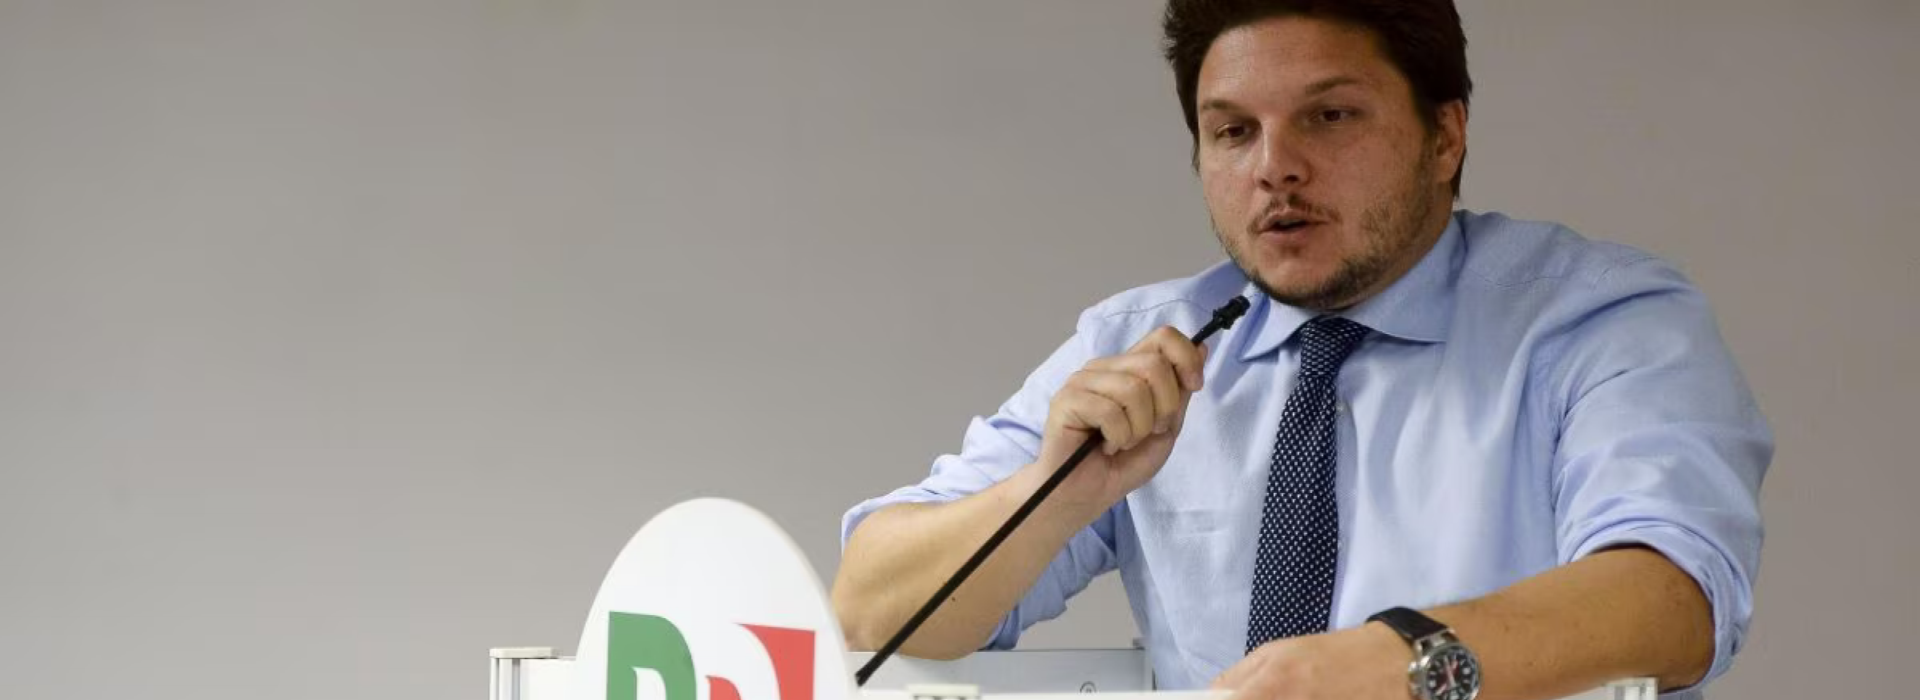 Scandalo Gallo: nuove rivelazioni agitano il panorama politico piemontese